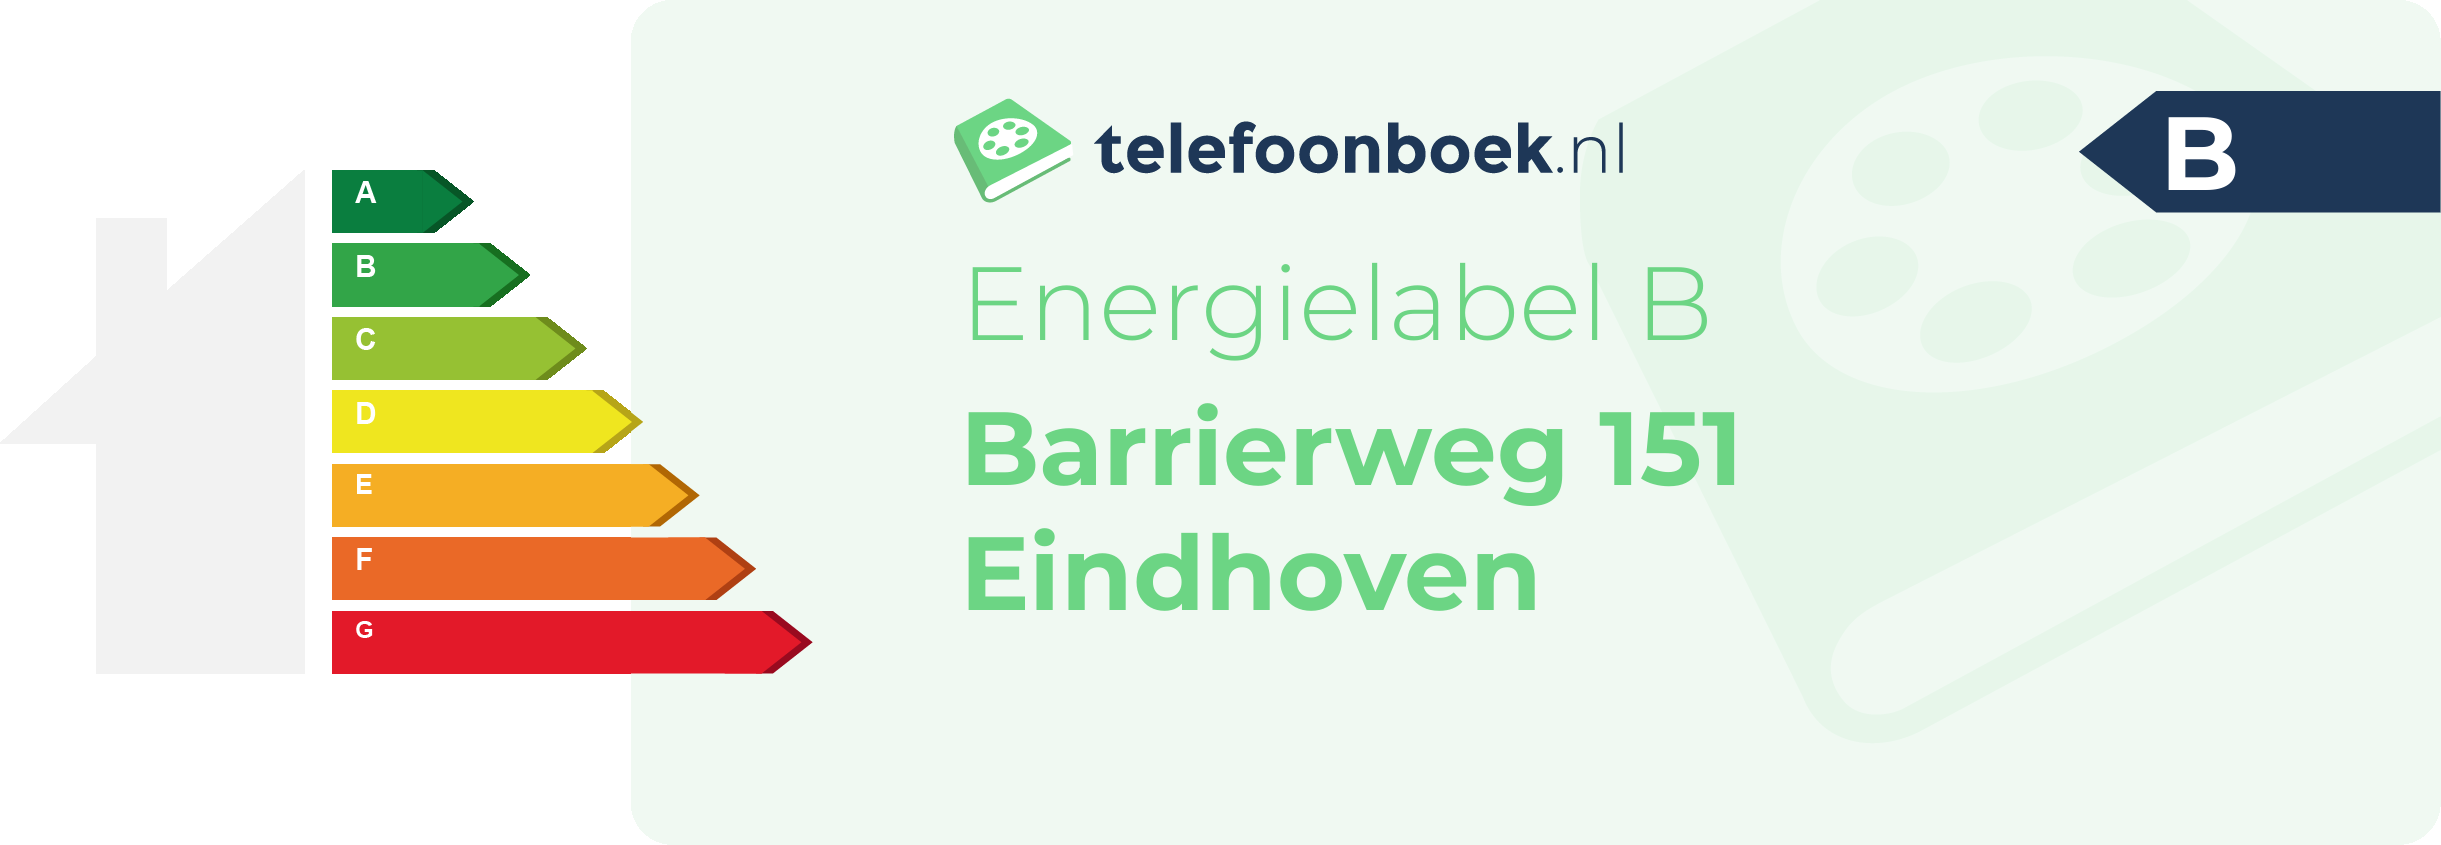 Energielabel Barrierweg 151 Eindhoven